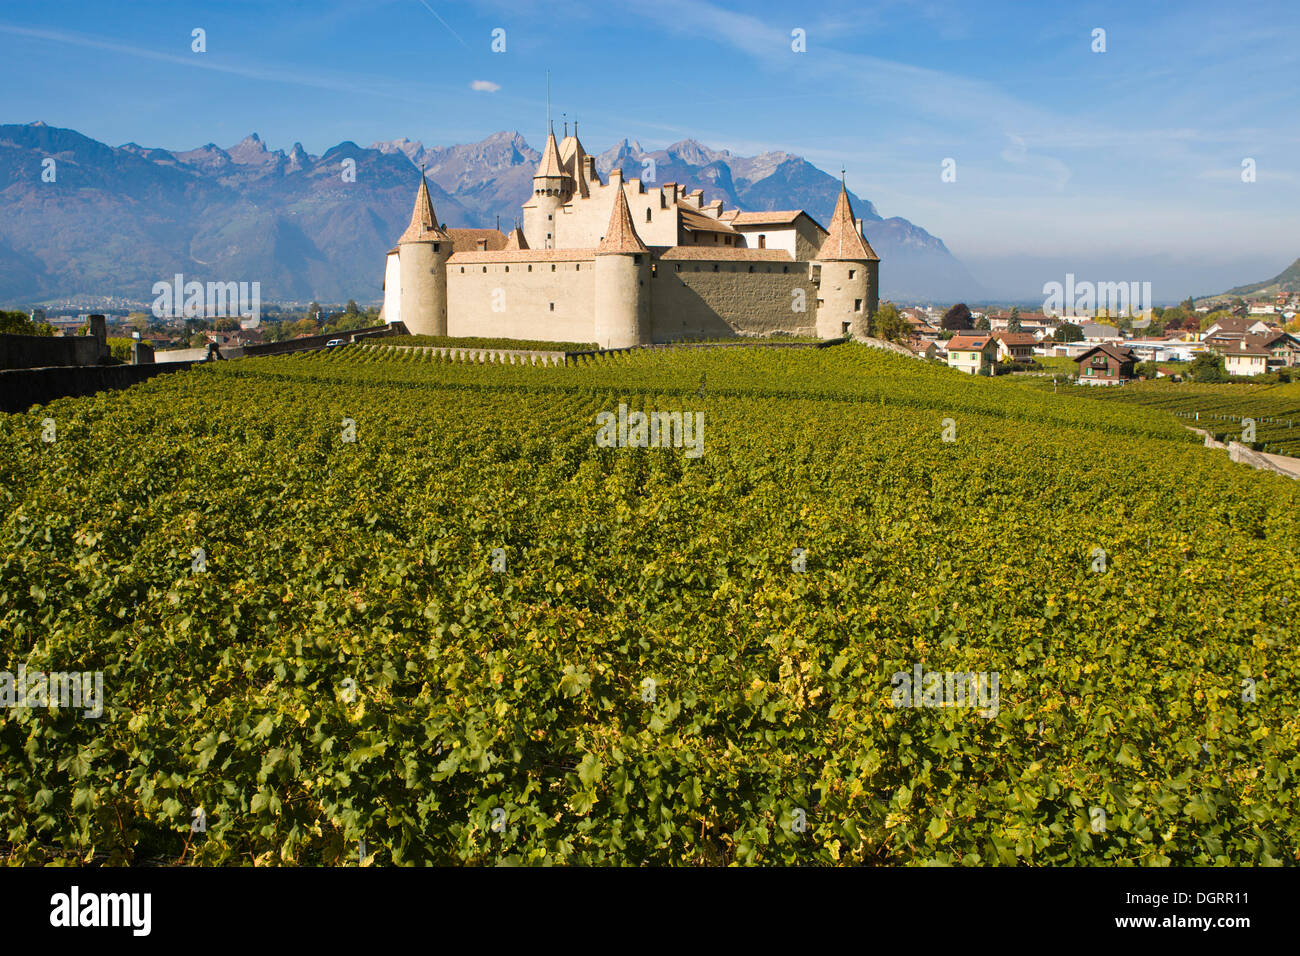 Chateau d'Aigle dans les vignobles de Lausanne, Canton de Vaud, Suisse, Europe Banque D'Images